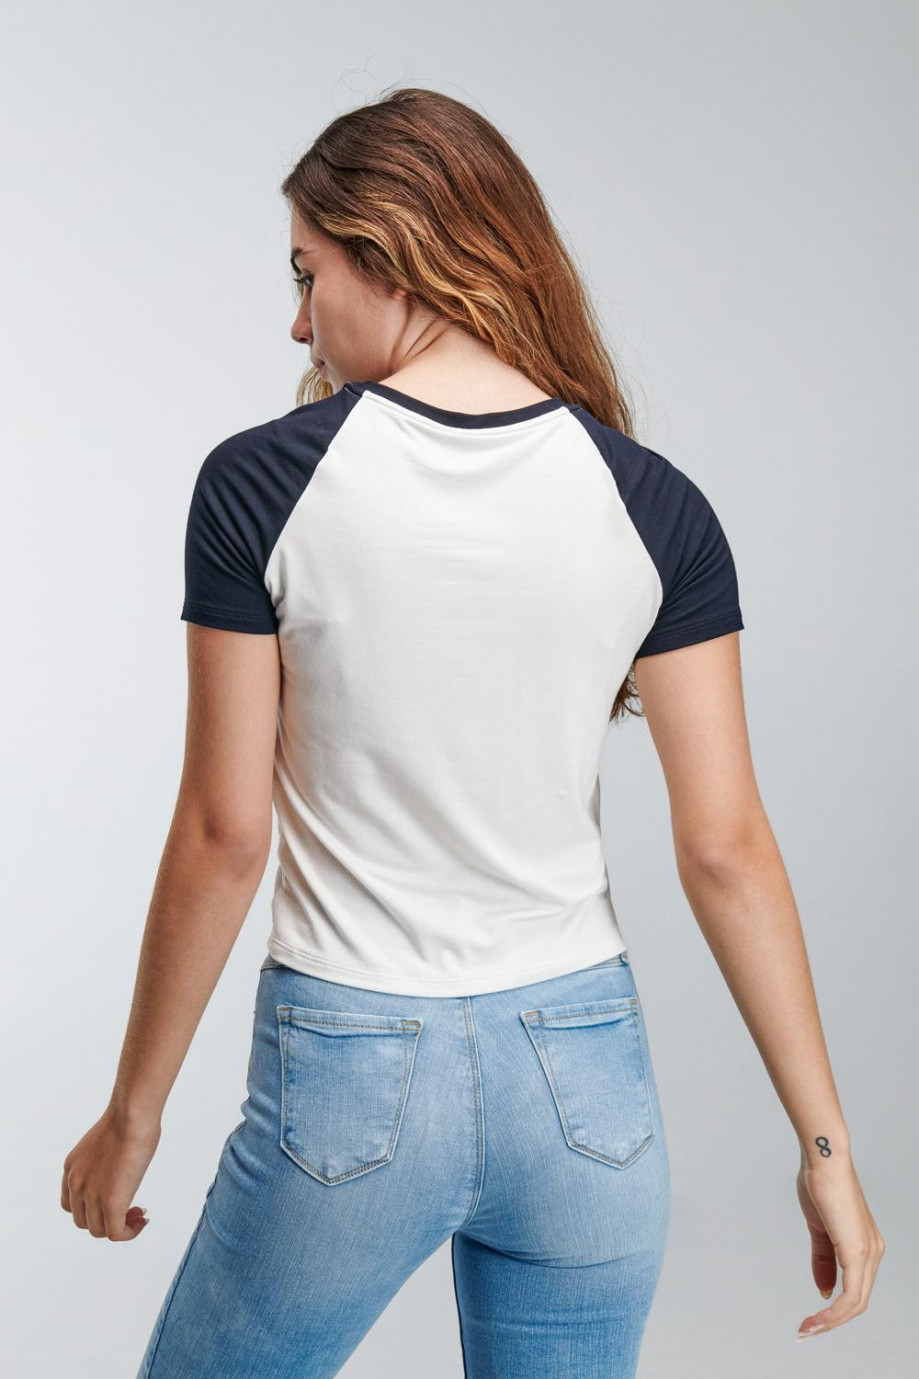 Camiseta unicolor con estampado y manga ranglan corta en contraste